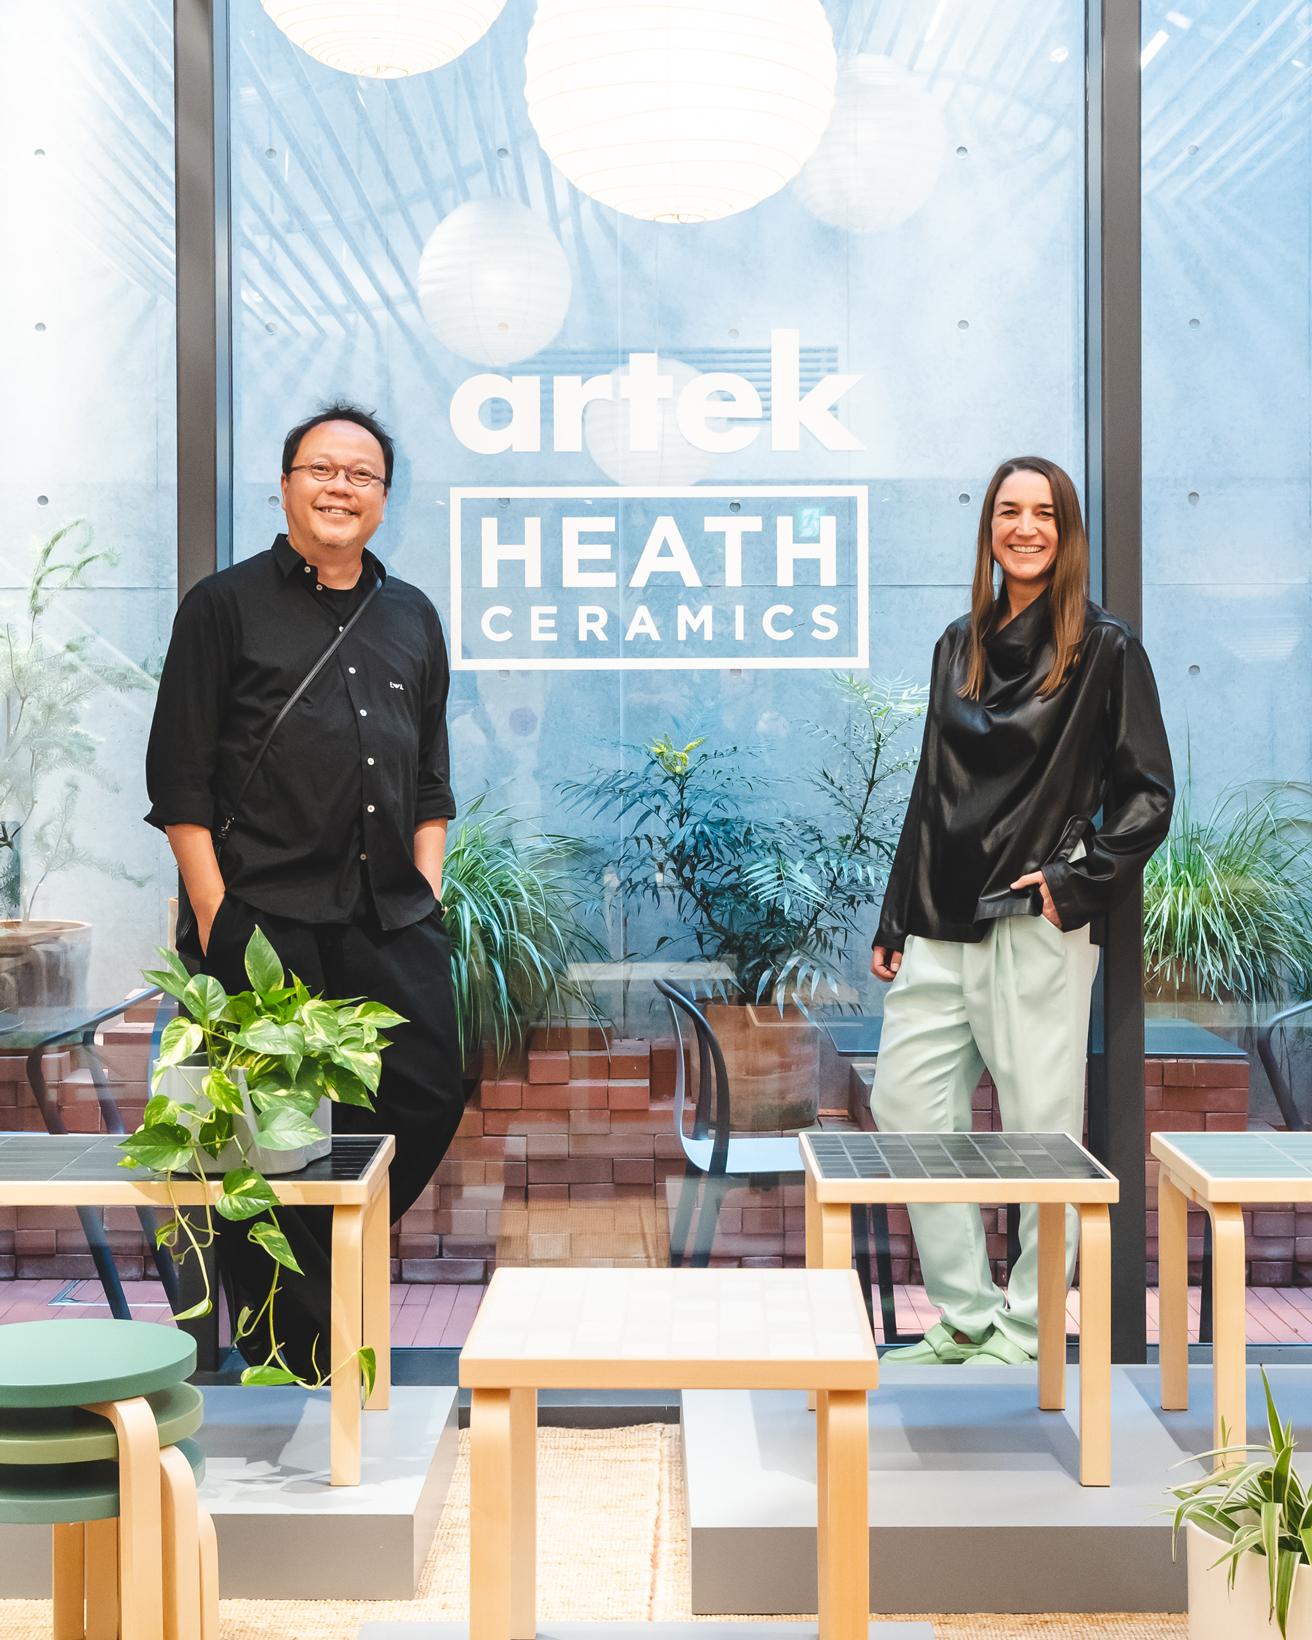 〈Artek Tokyo Store〉にて。〈ヒースセラミックス〉のスタジオディレクター、タン・チャン（左）と〈アルテック〉代表のマリアンネ・ゴーブル。2015年、一通のメールから始まったという両社のコラボレーションは今回で3度目だが、日本では初披露となる。
